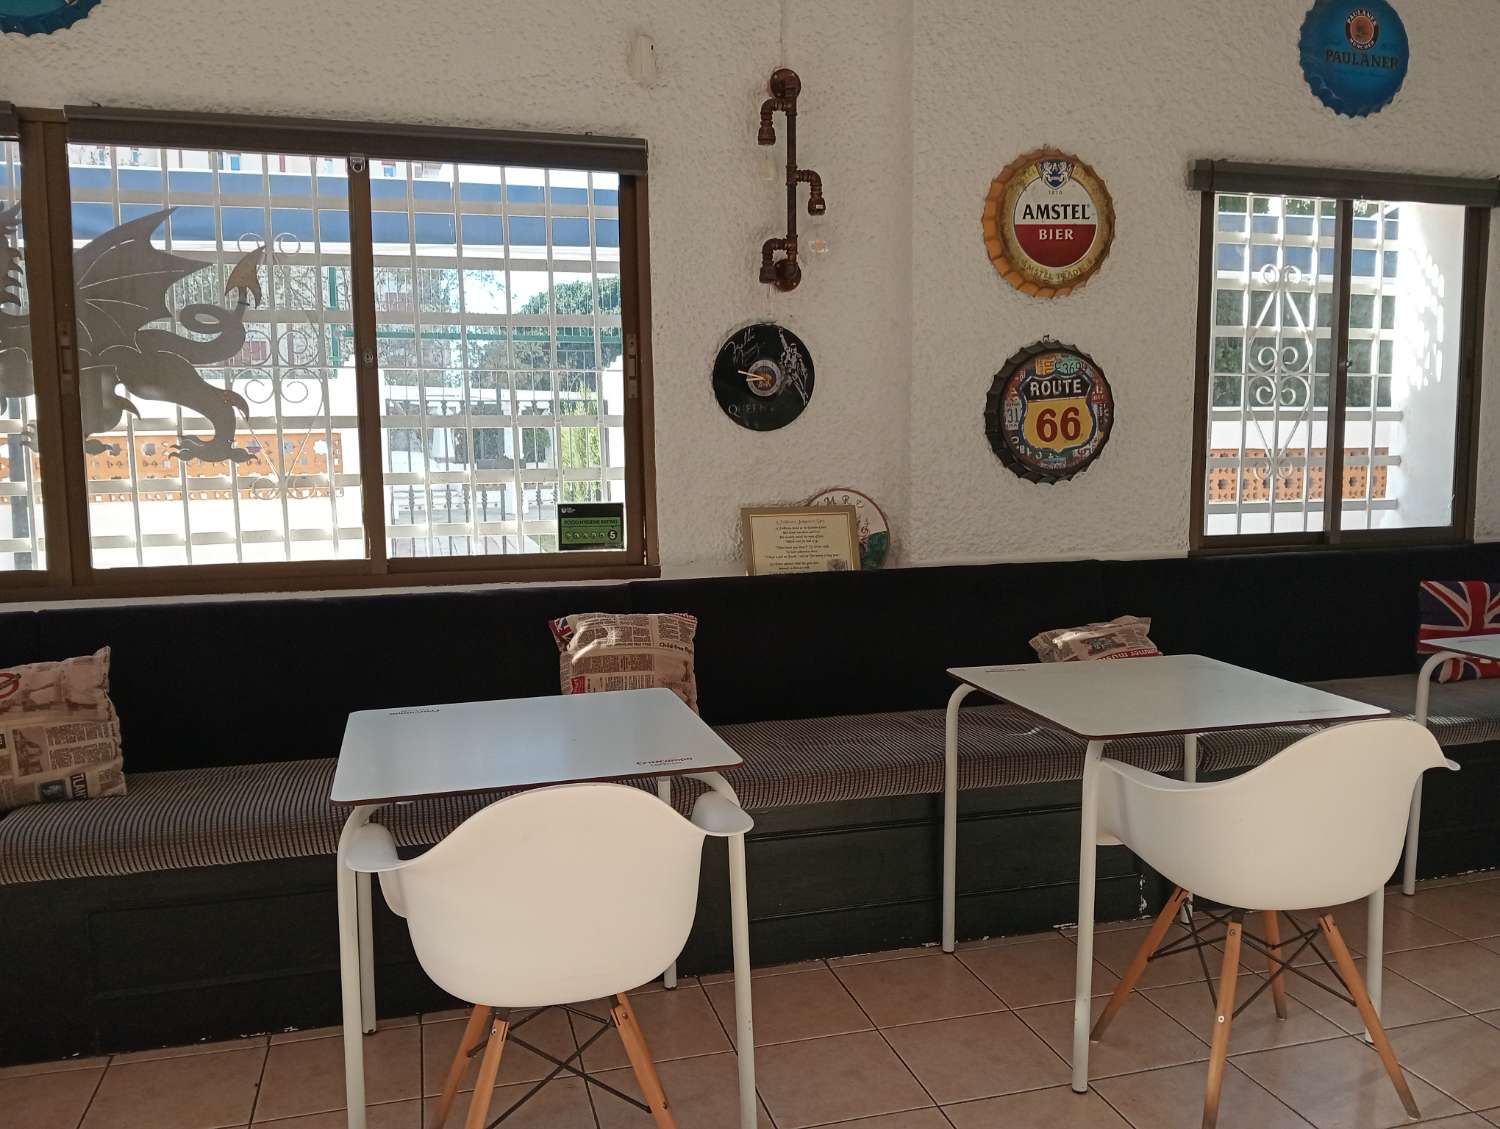 Cafeteria overførsel i Arroyo de la Miel (Benalmádena)